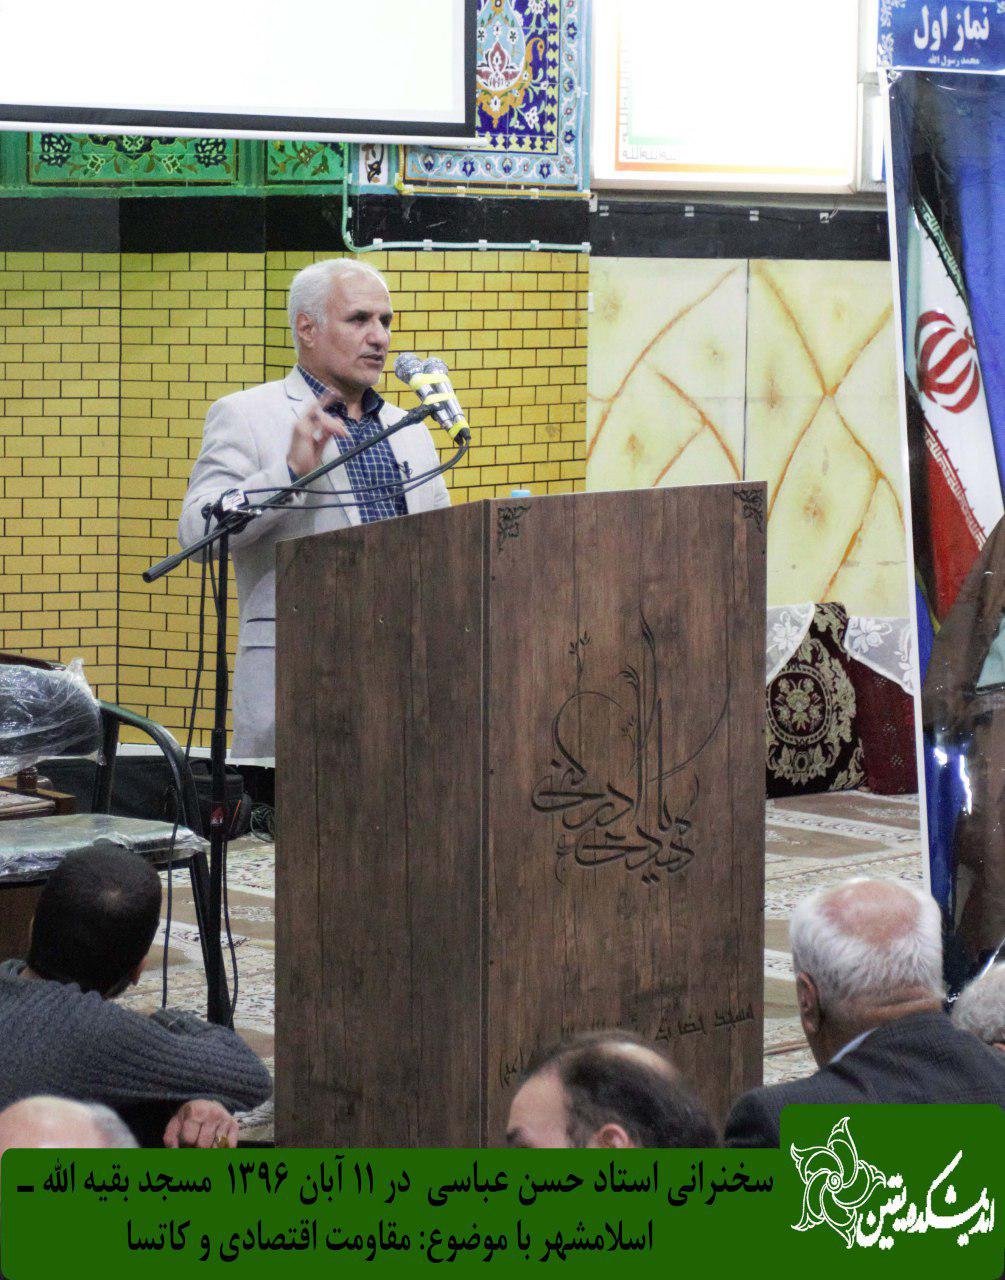 سخنرانی استاد حسن عباسی با موضوع مقاومت اقتصادی و کاتسا